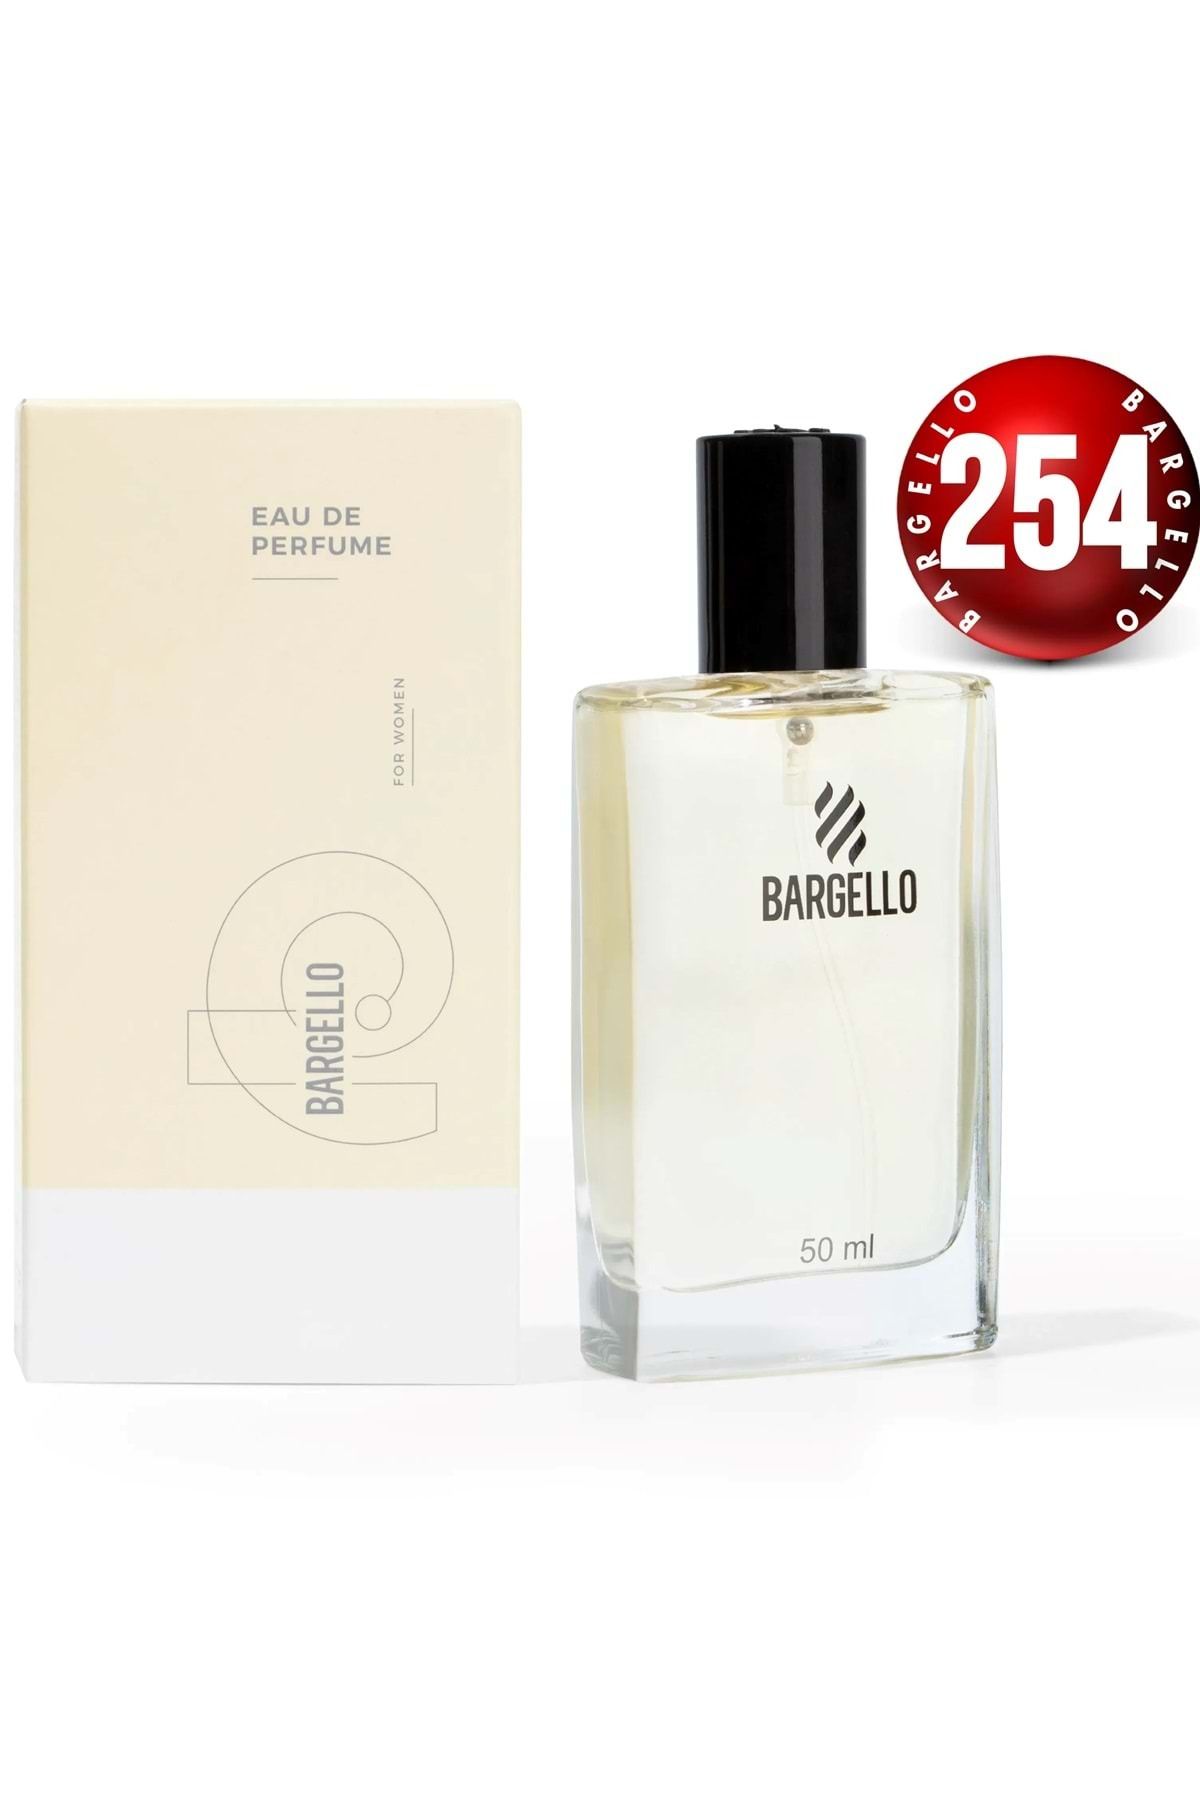 Bargello 254 Kadın 50 ml Parfüm Edp Floral